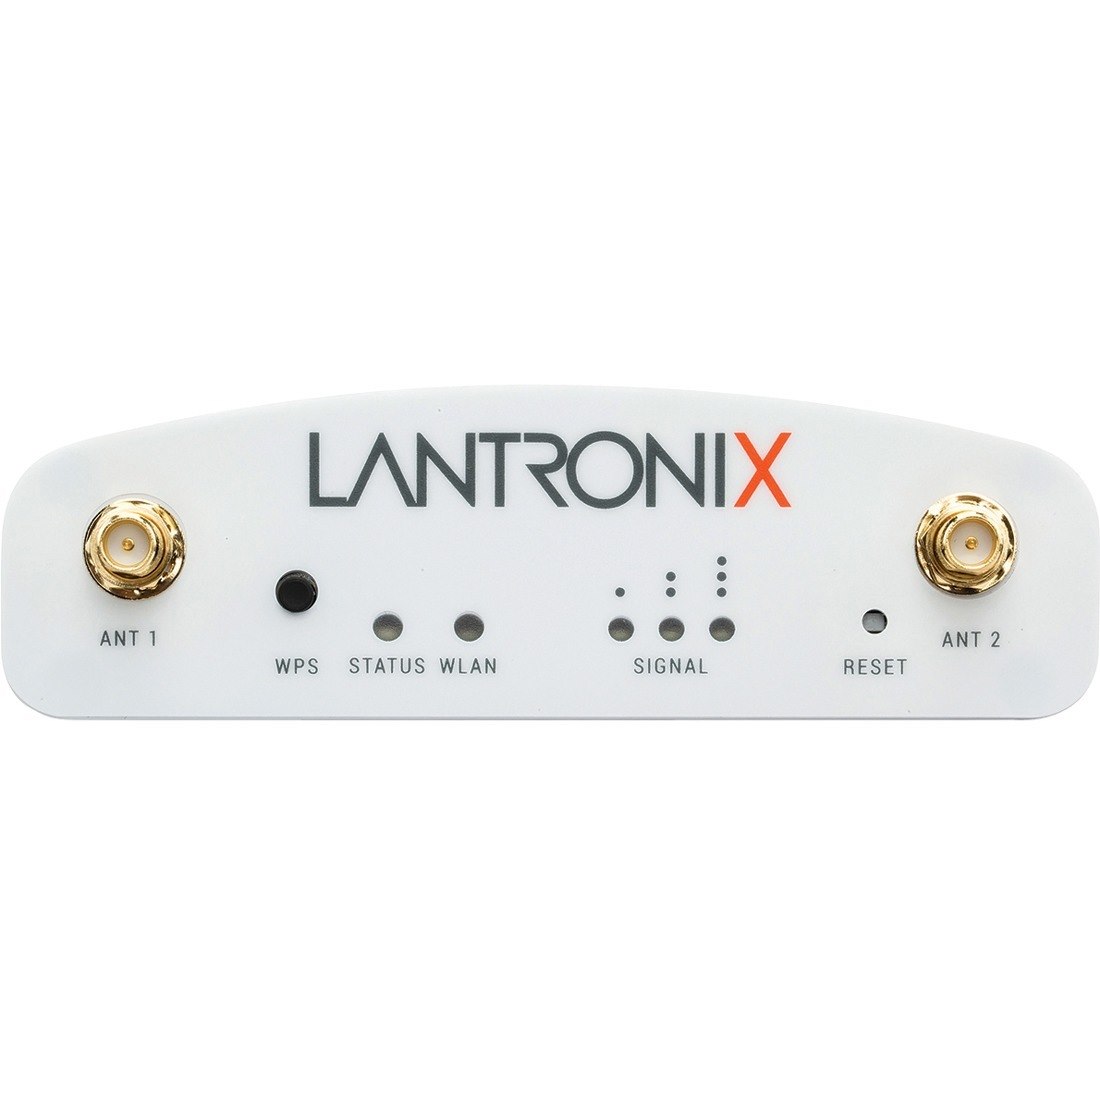 Lantronix SGX 5150 Wireless IoT Gateway, 802.11a/b/g/n/ac, 2xRS485 (RJ45), USB, 10/100 Ethernet, PoE, EU Model